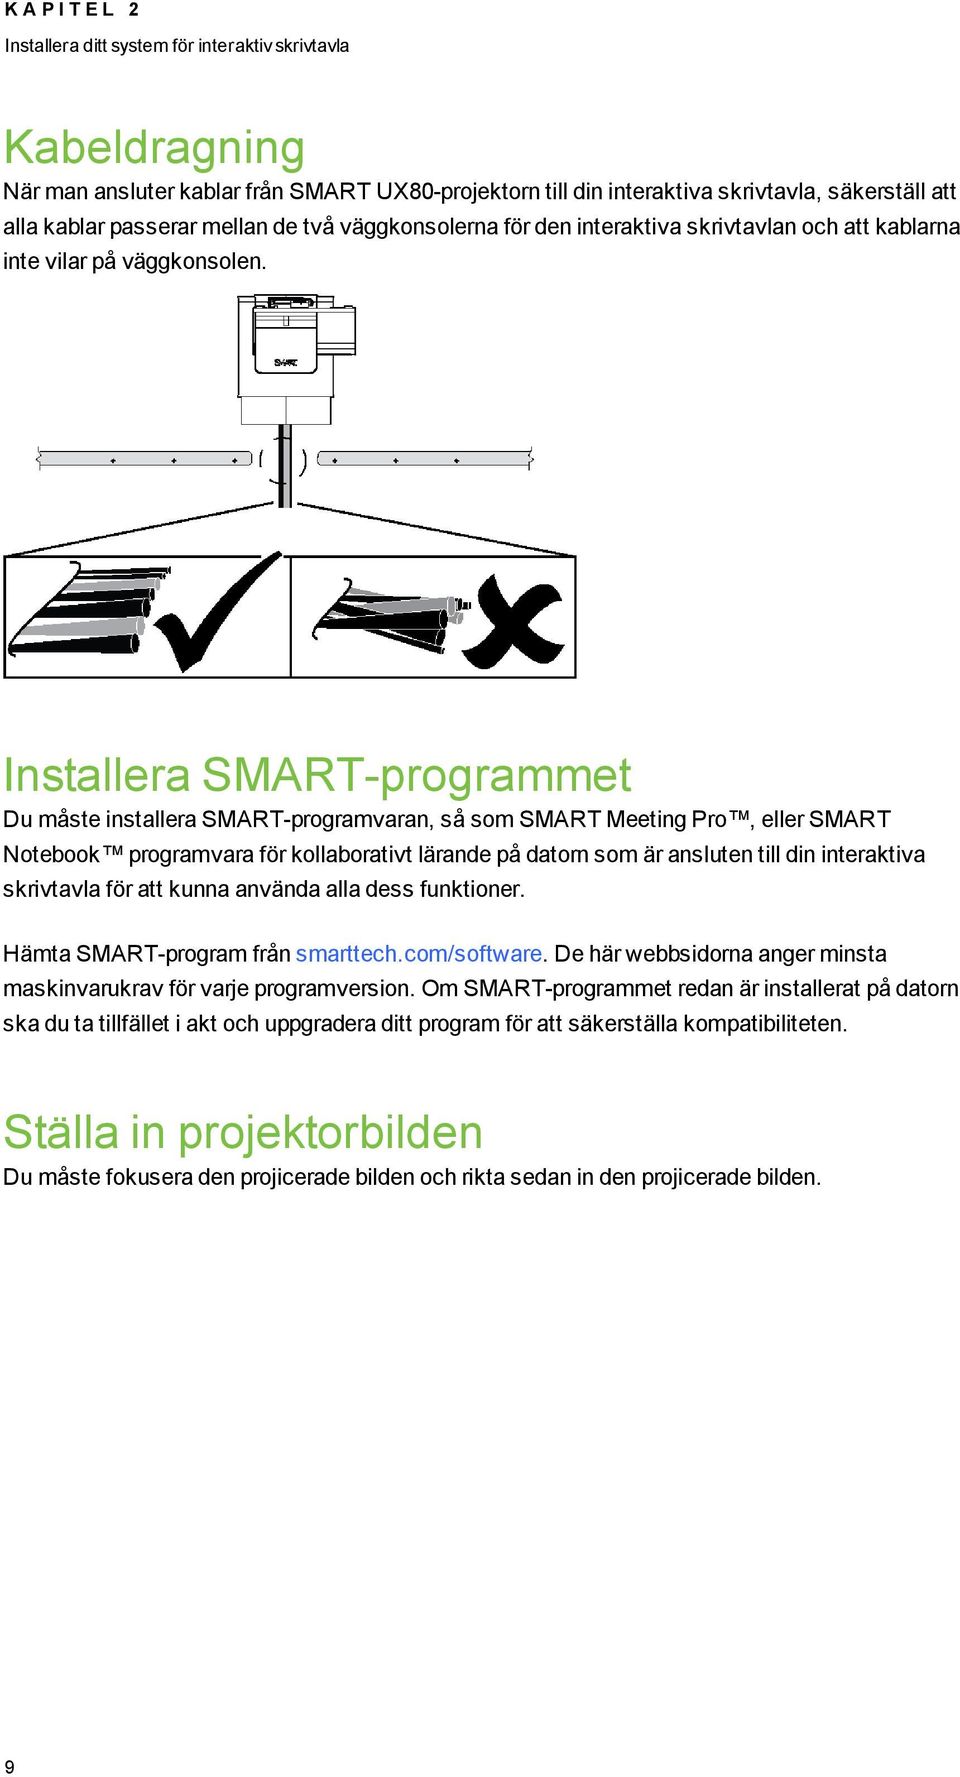 Installera SMART-programmet Du måste installera SMART-programvaran, så som SMART Meeting Pro, eller SMART Notebook programvara för kollaborativt lärande på datorn som är ansluten till din interaktiva